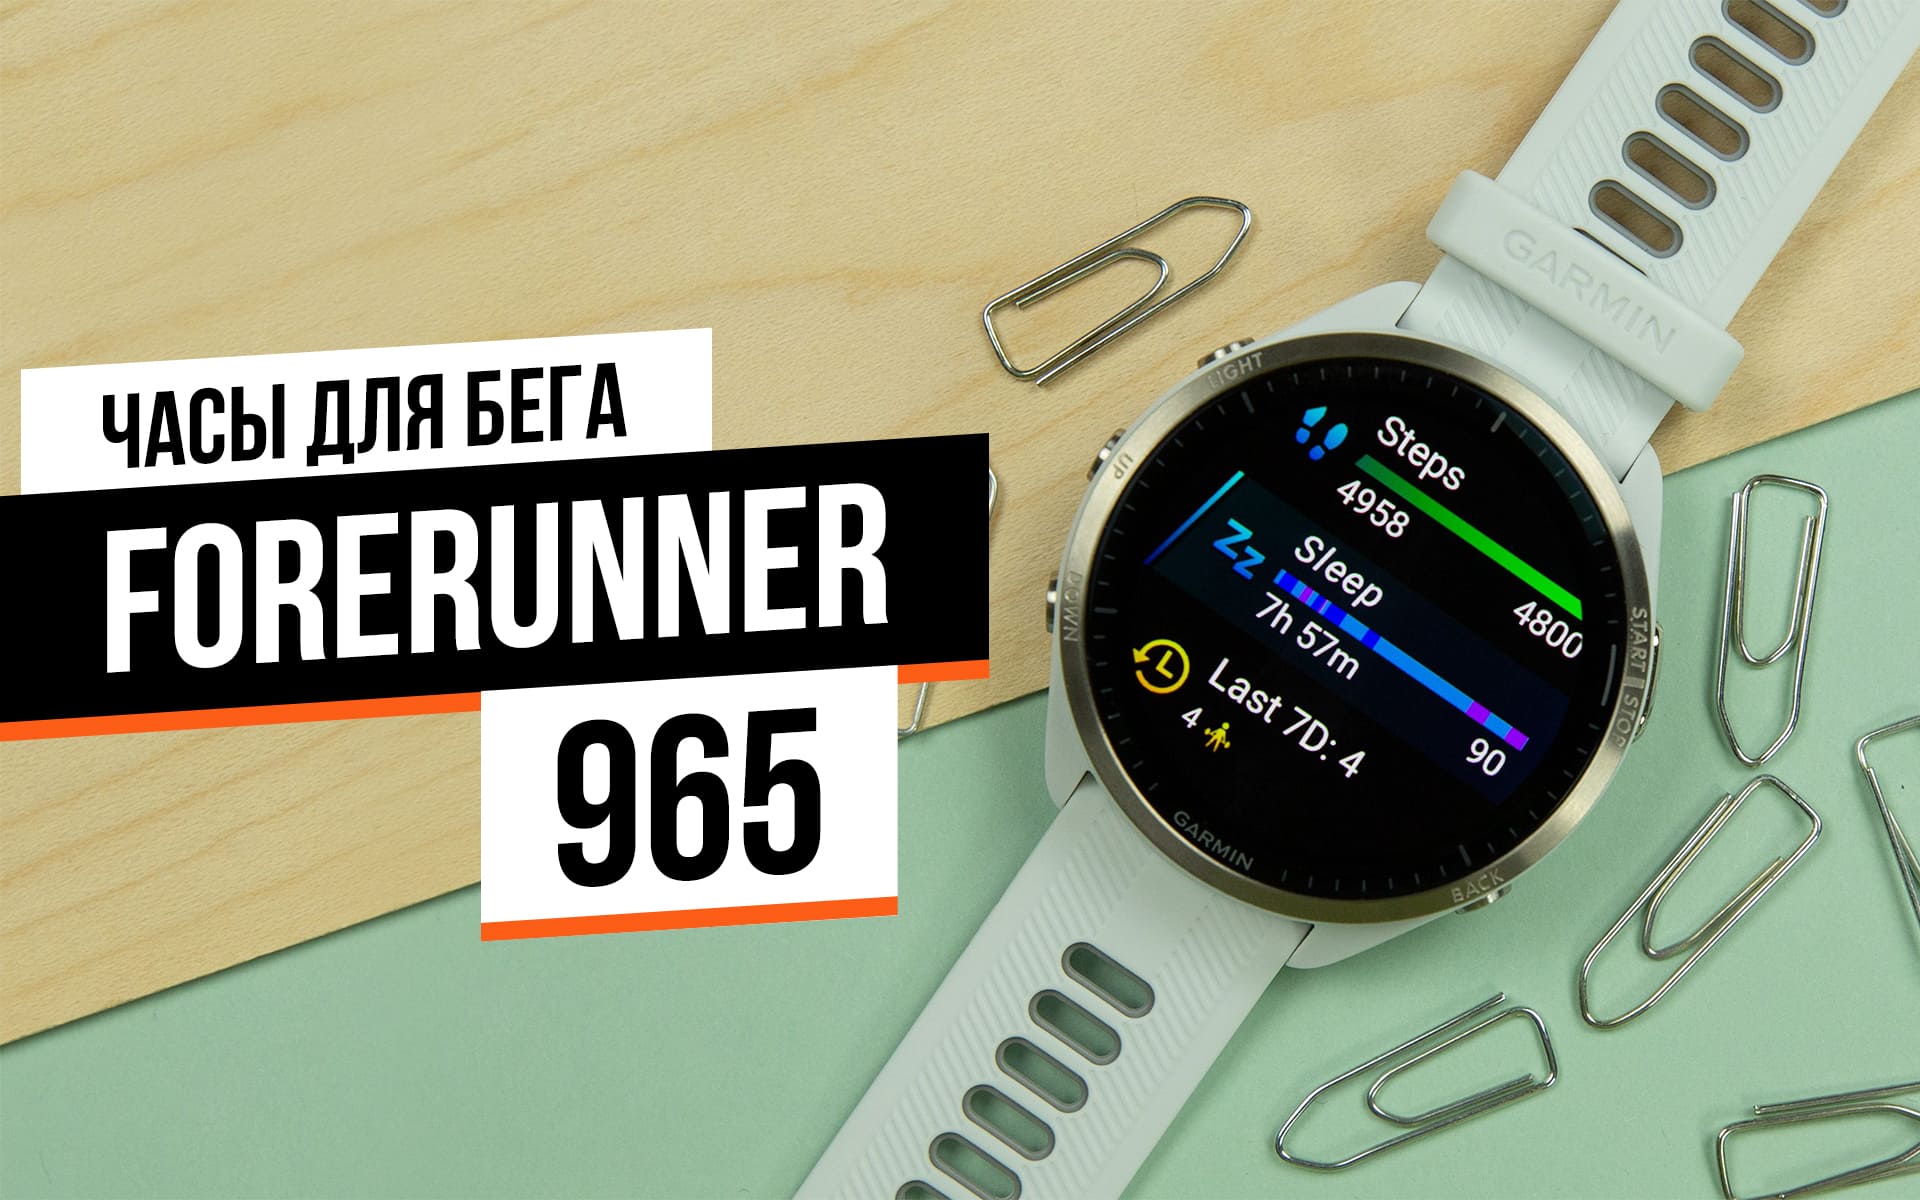 Обзор Garmin Forerunner 965: отличные часы для бега со средними смарт-функциями